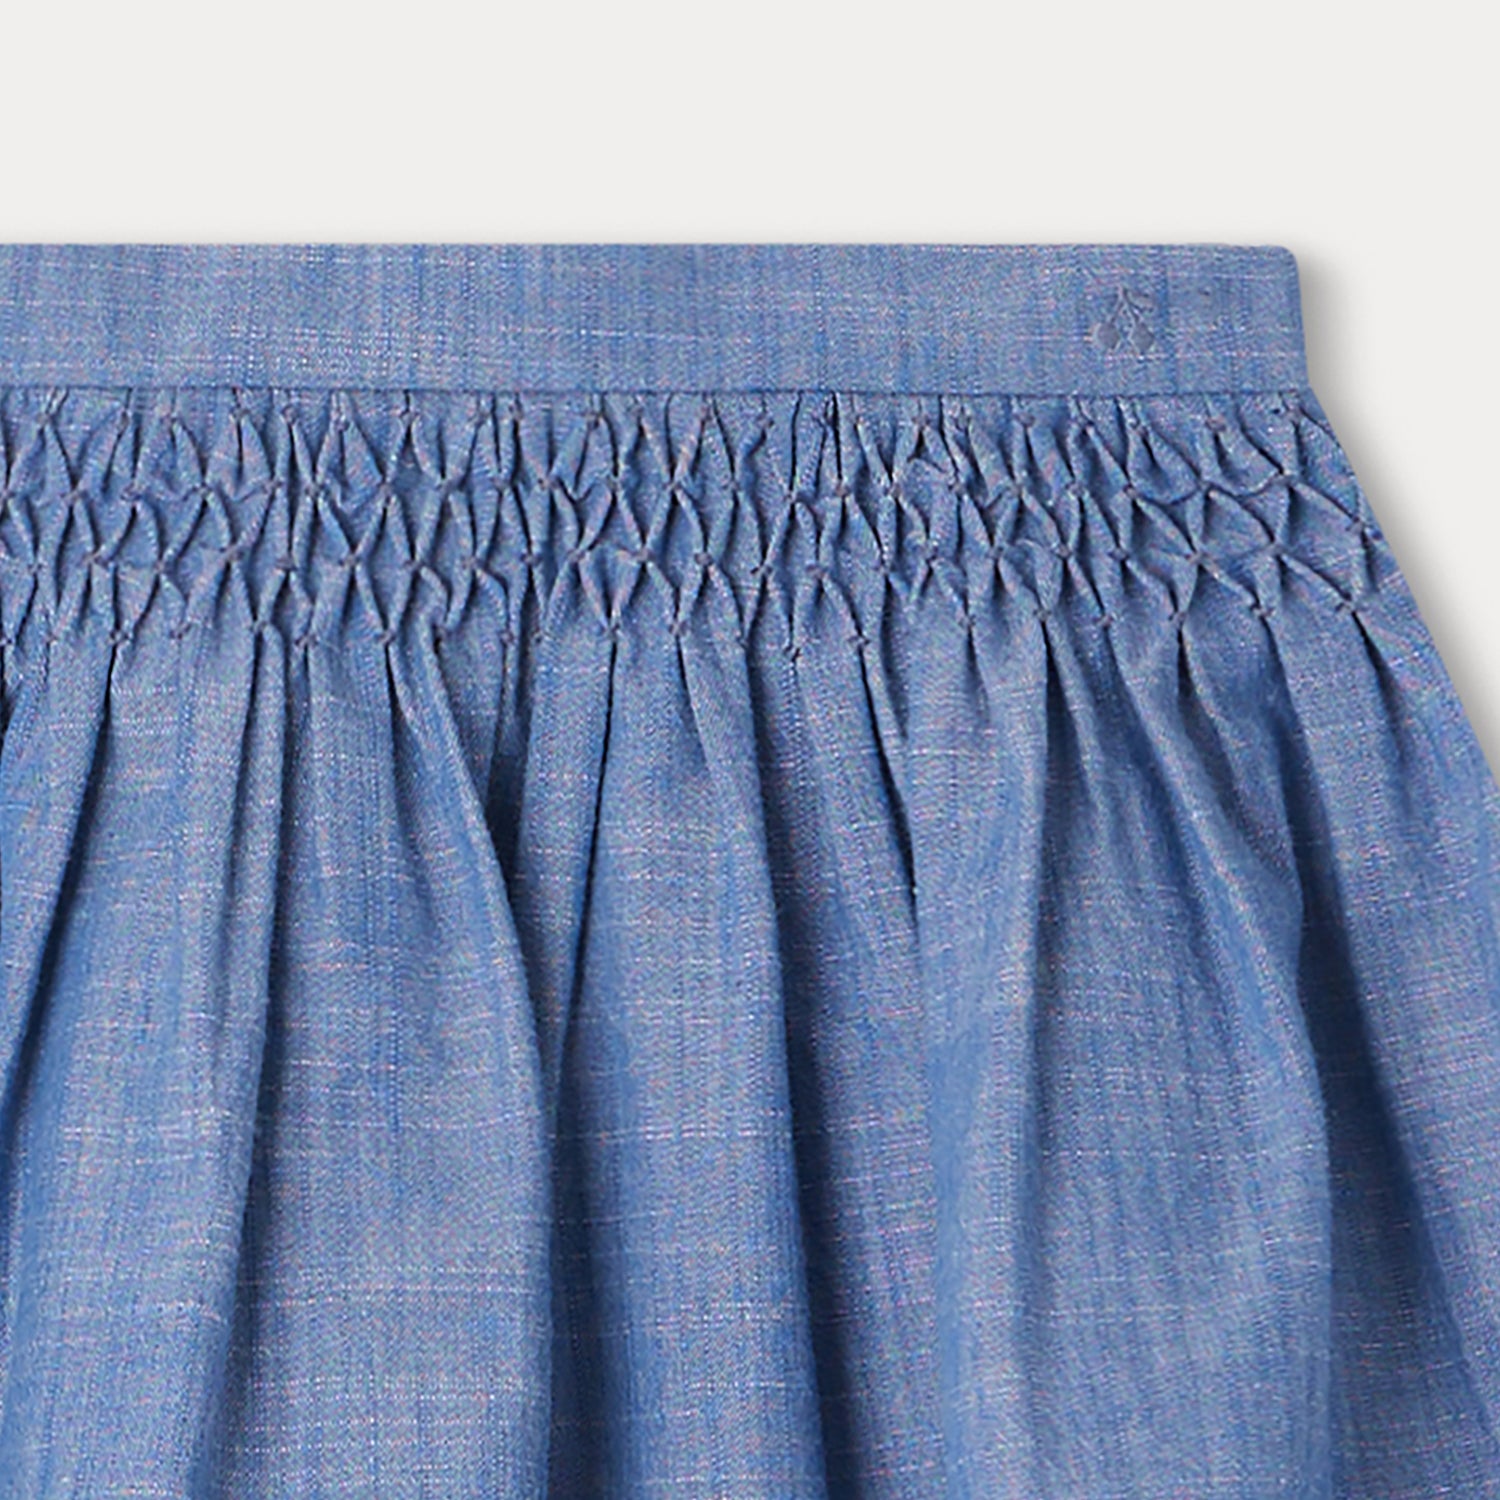 Girls Blue Cotton Skirt